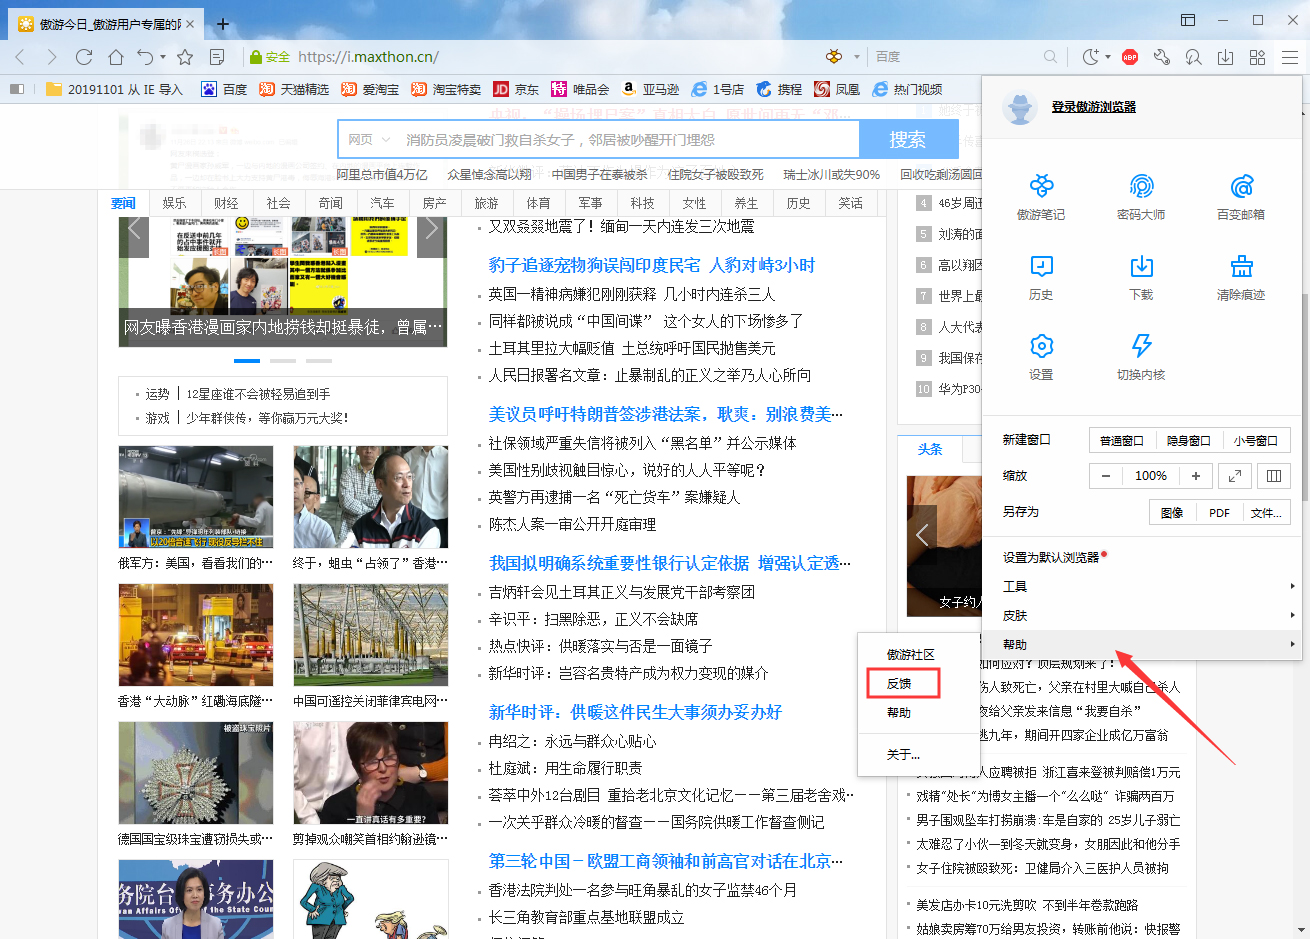 傲游浏览器提交问题反馈信息的详细操作方法(图文)